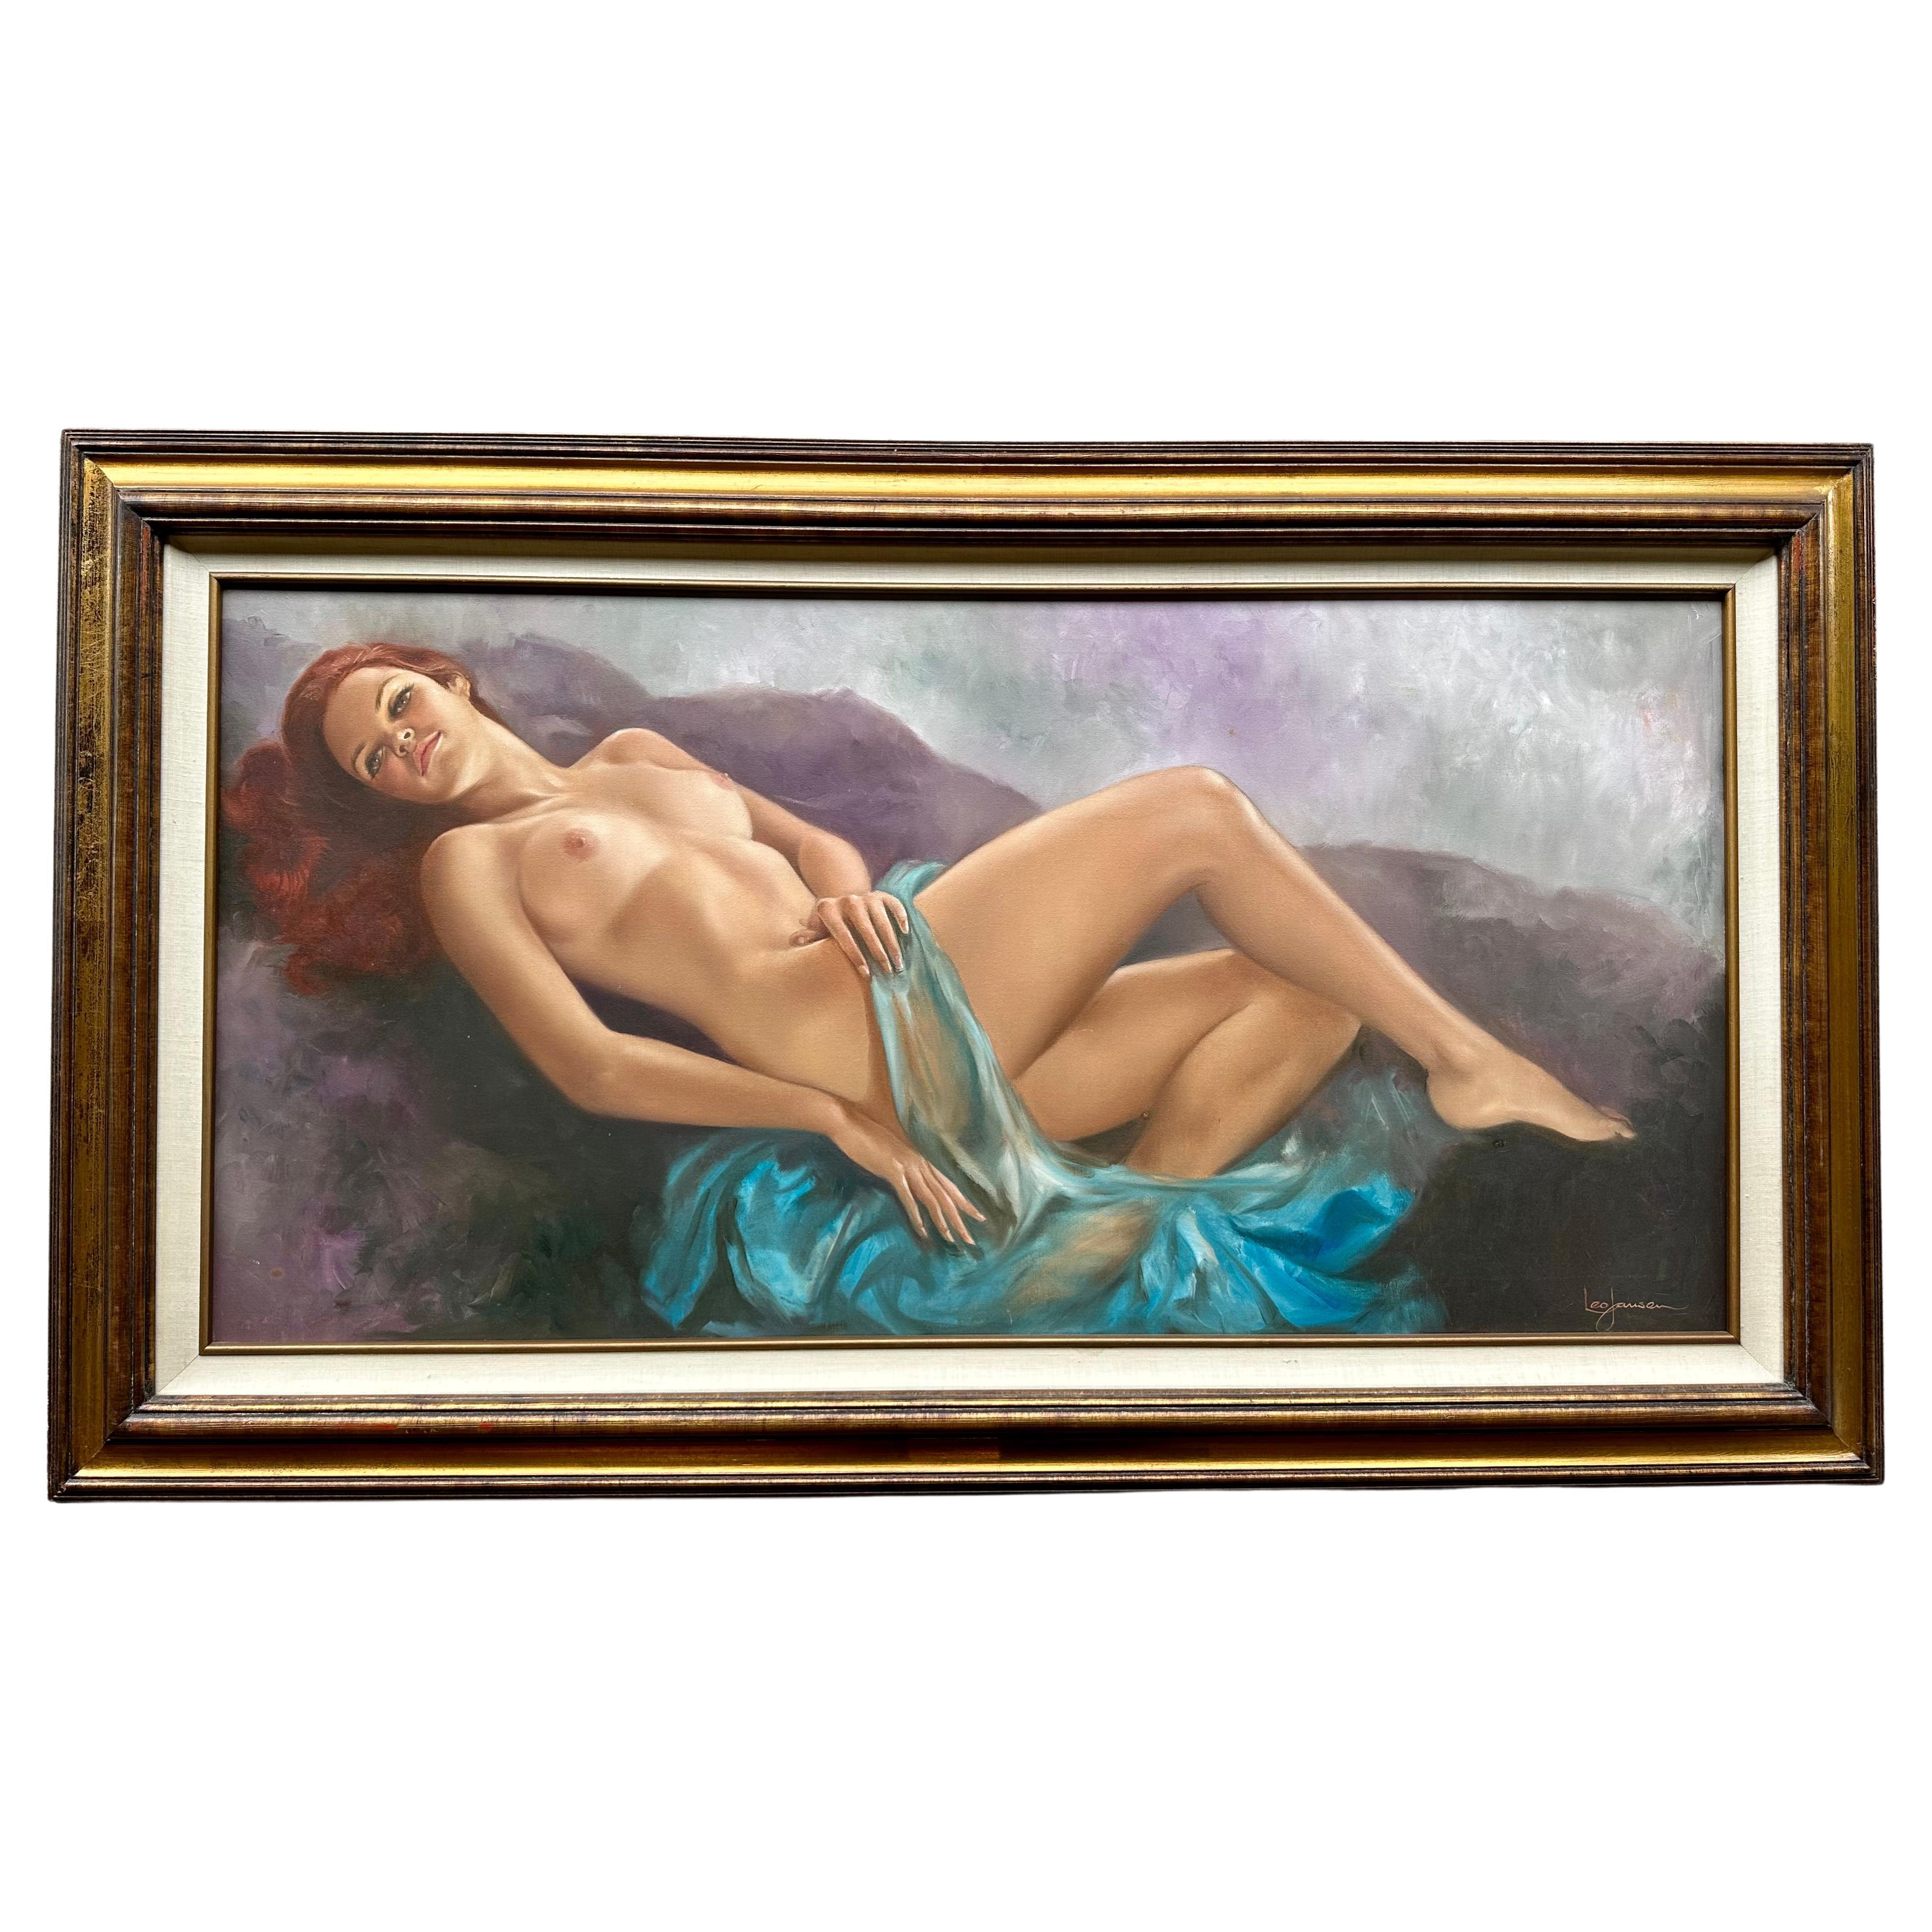 Gran óleo original sobre lienzo, muy sensual, de una bella mujer desnuda reclinada y pelirroja, obra del famoso artista holandés Leo Jansen (1930-1980), ya fallecido. El fondo ondulado, como una nube, en tonos púrpura, verde azulado y gris, añade